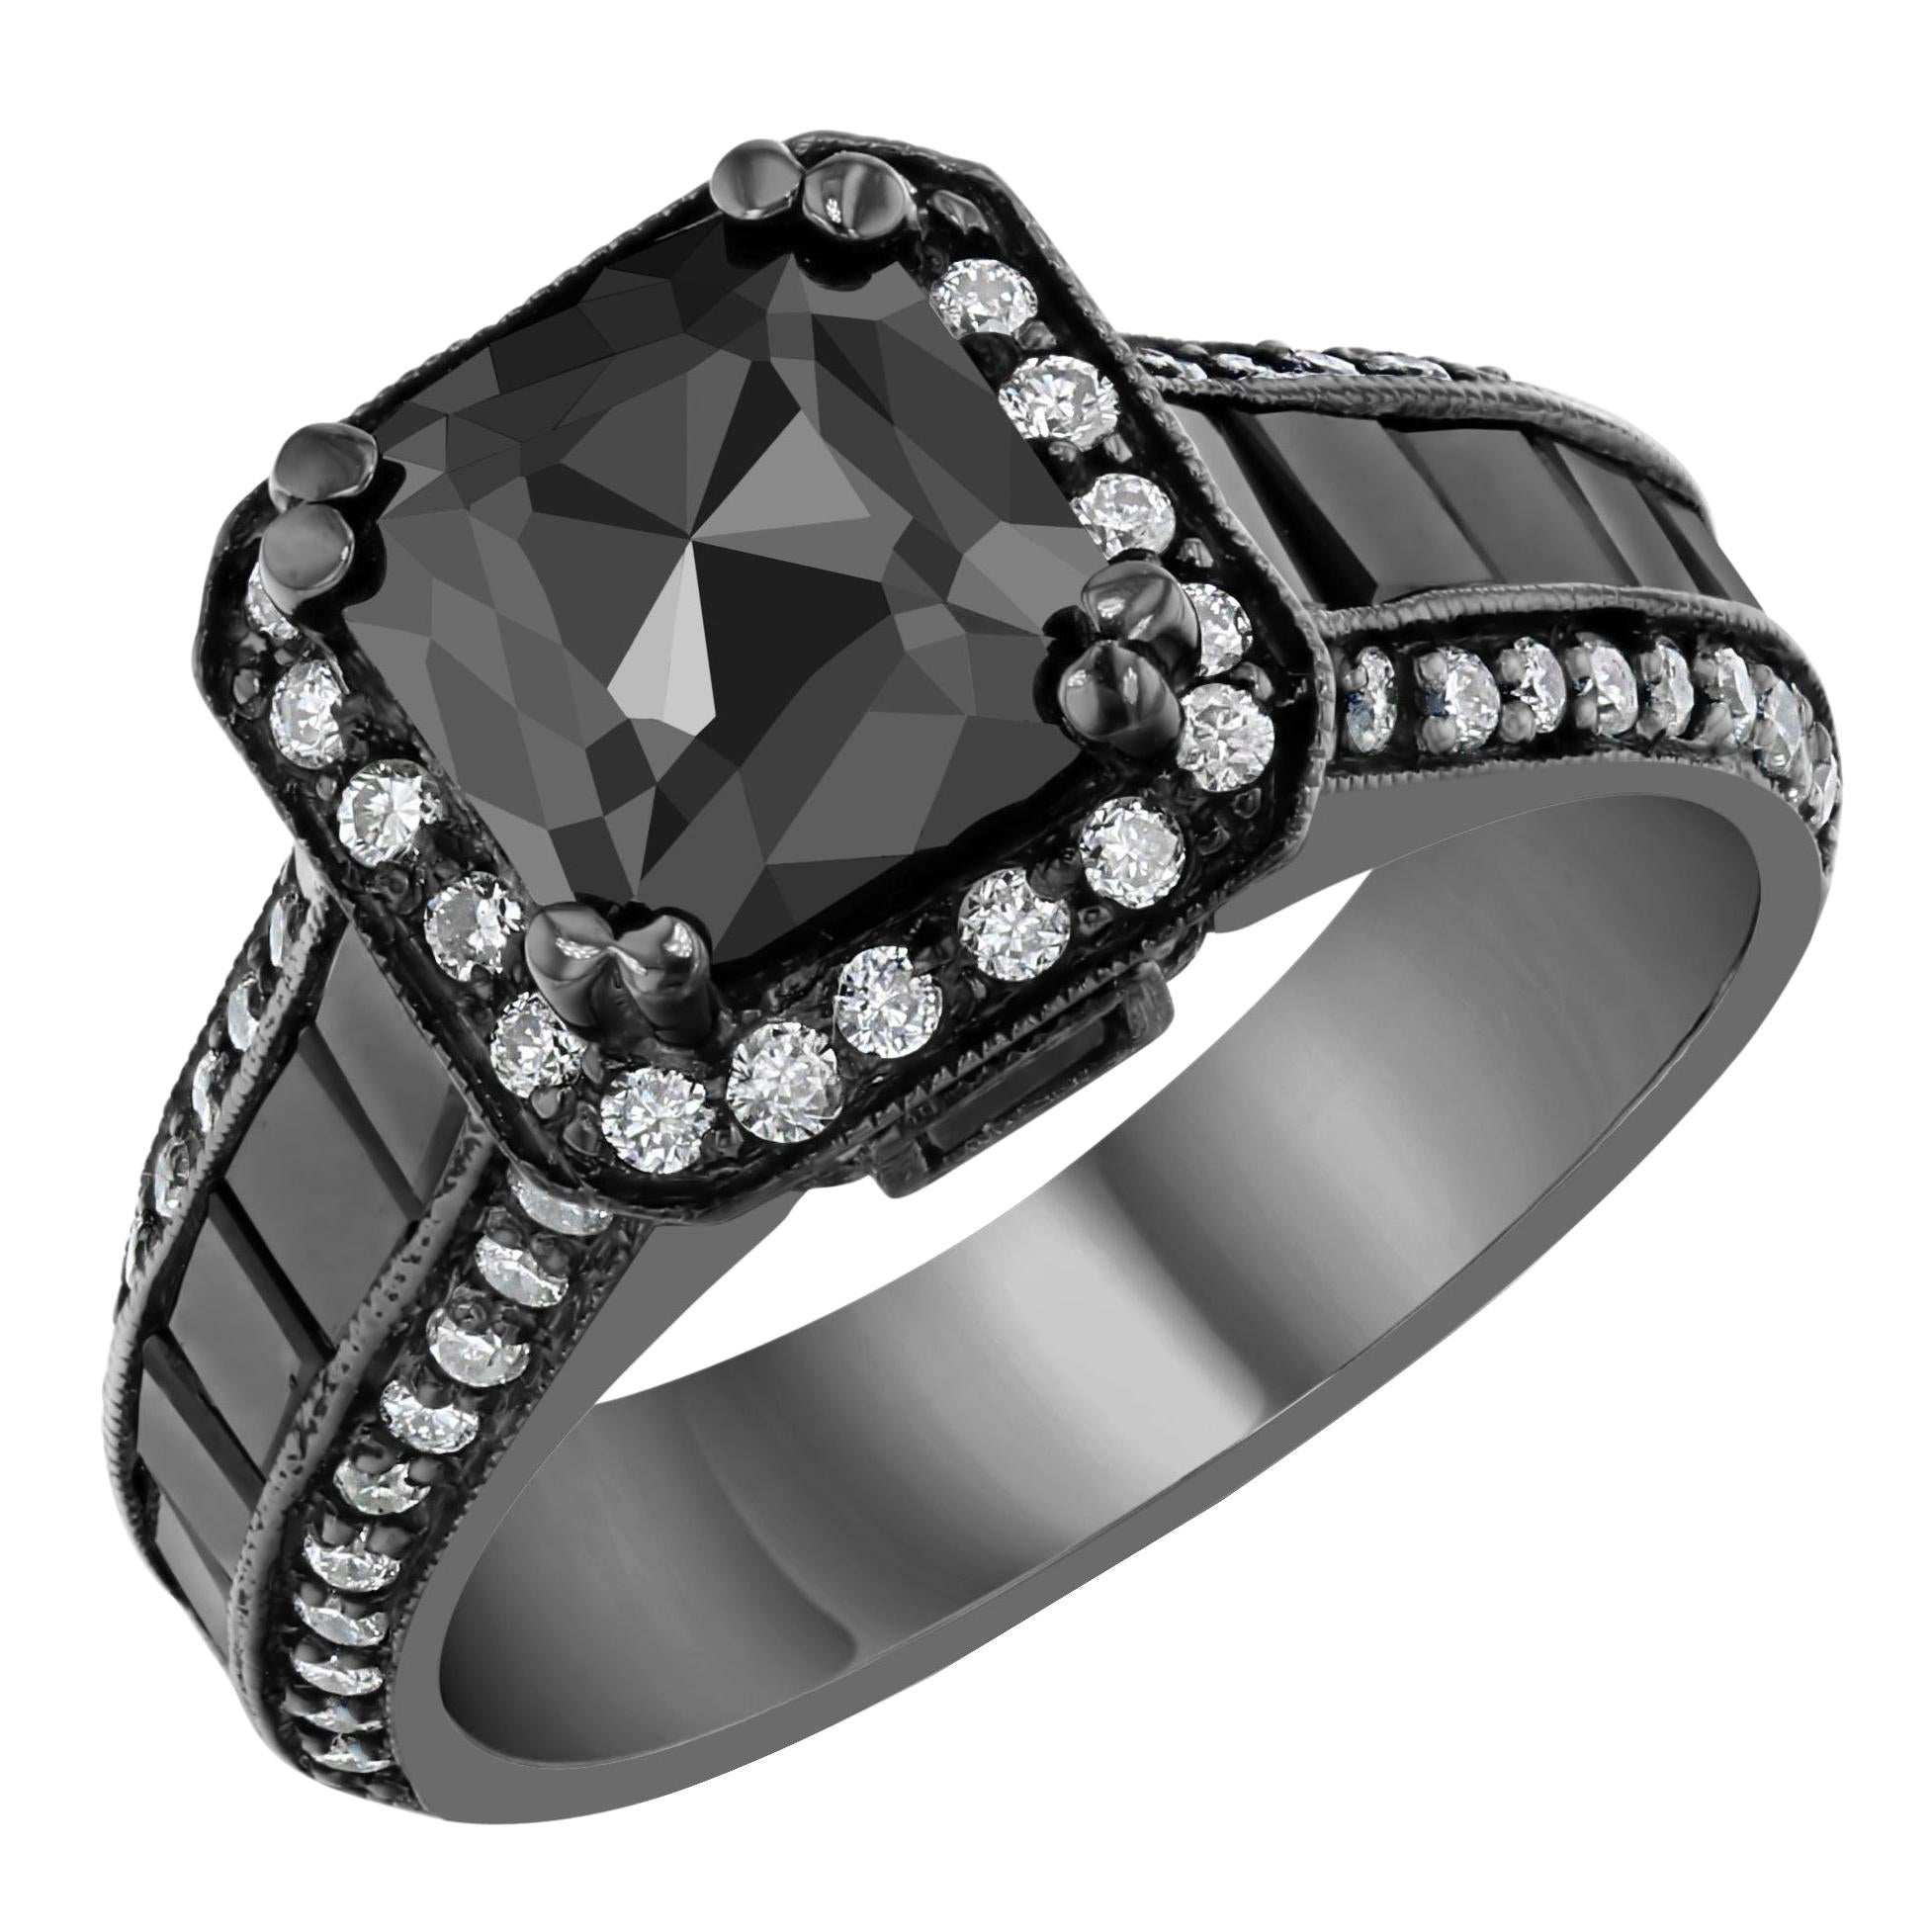 3.48 Carat Black and White Diamond 14 Karat Gold Ring